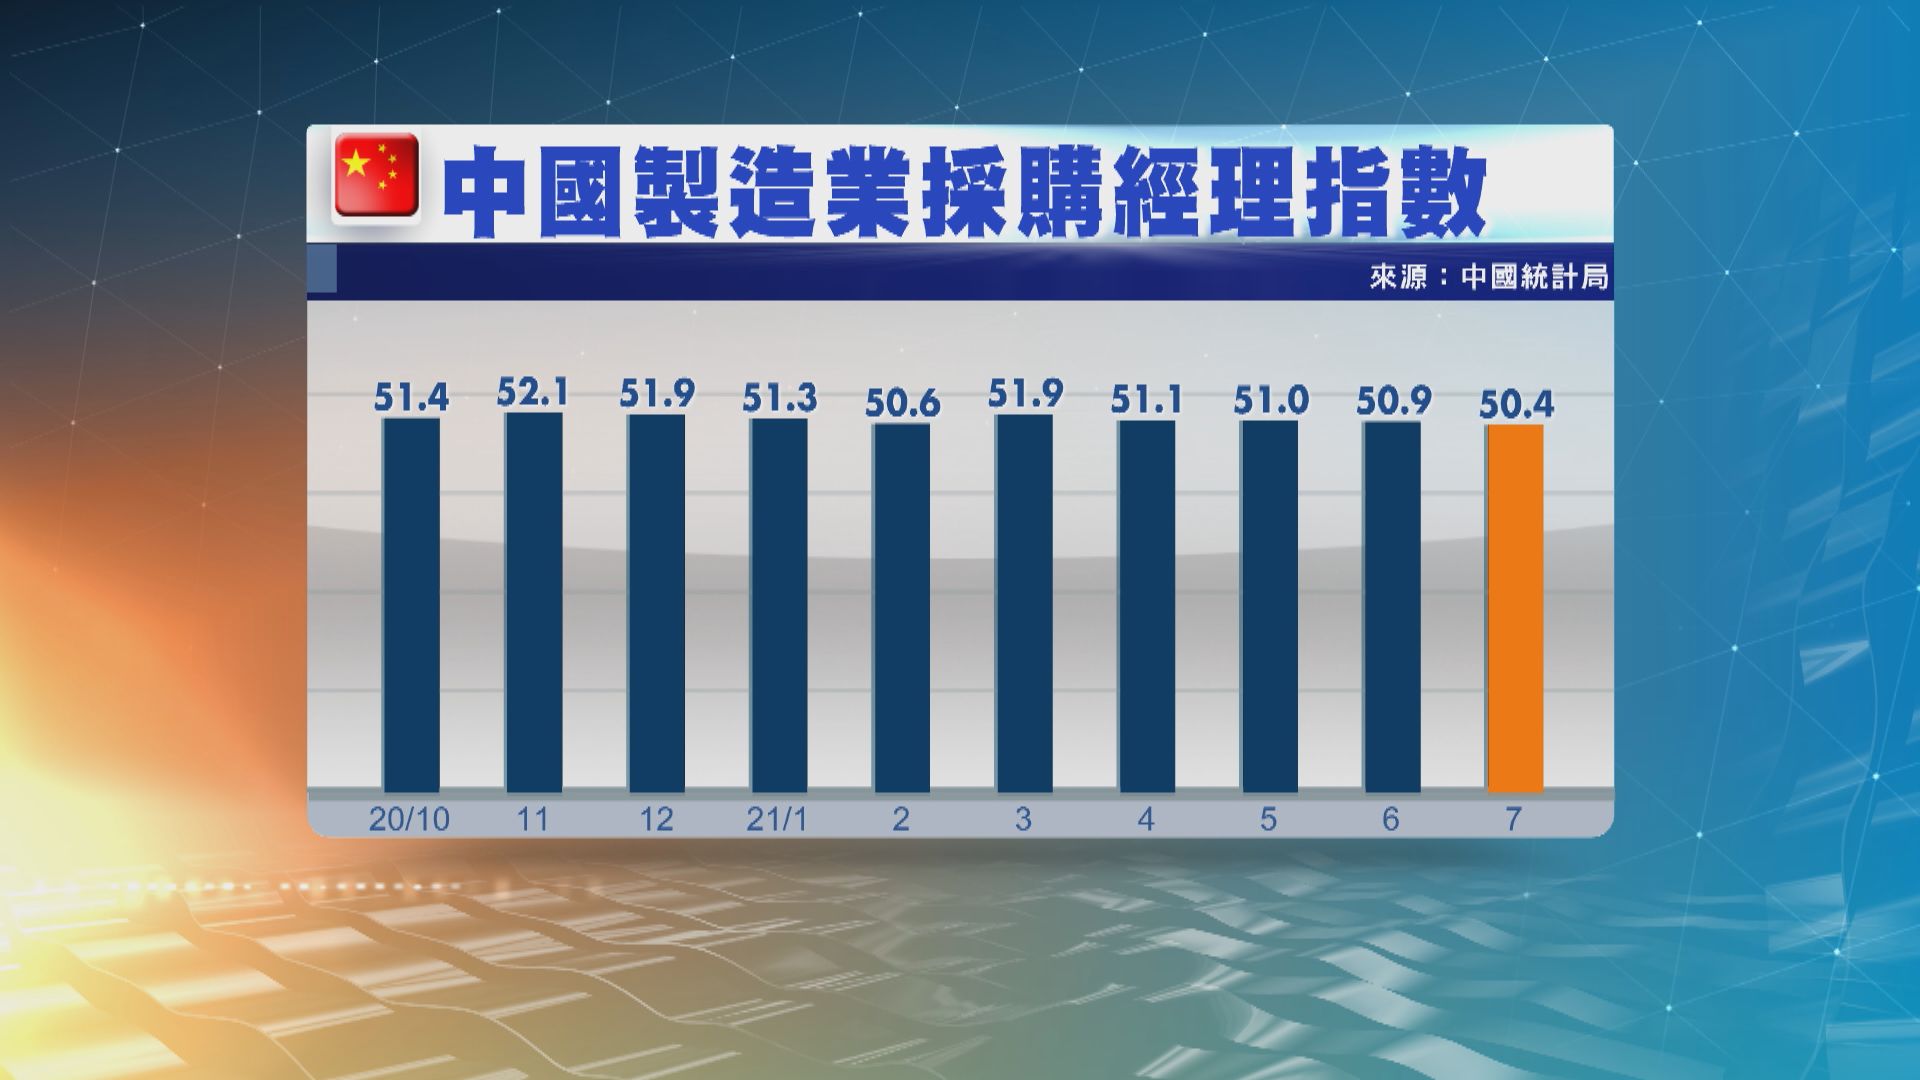 中國官方製造業採購經理指數跌至17個月低位